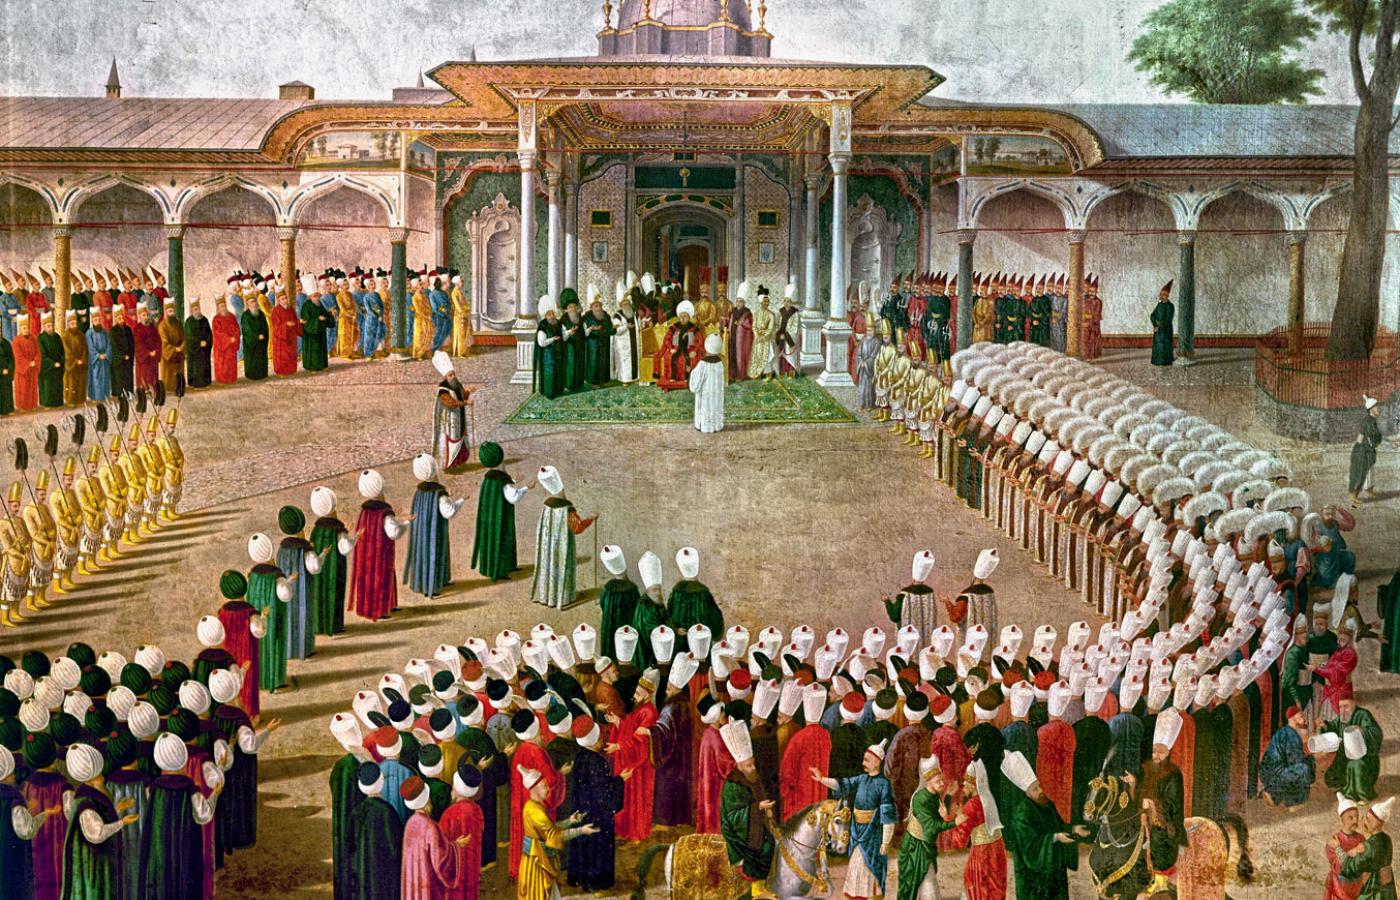 Audiencja u Selima III w pałacu Topkapı; ilustracja z XVIII w.